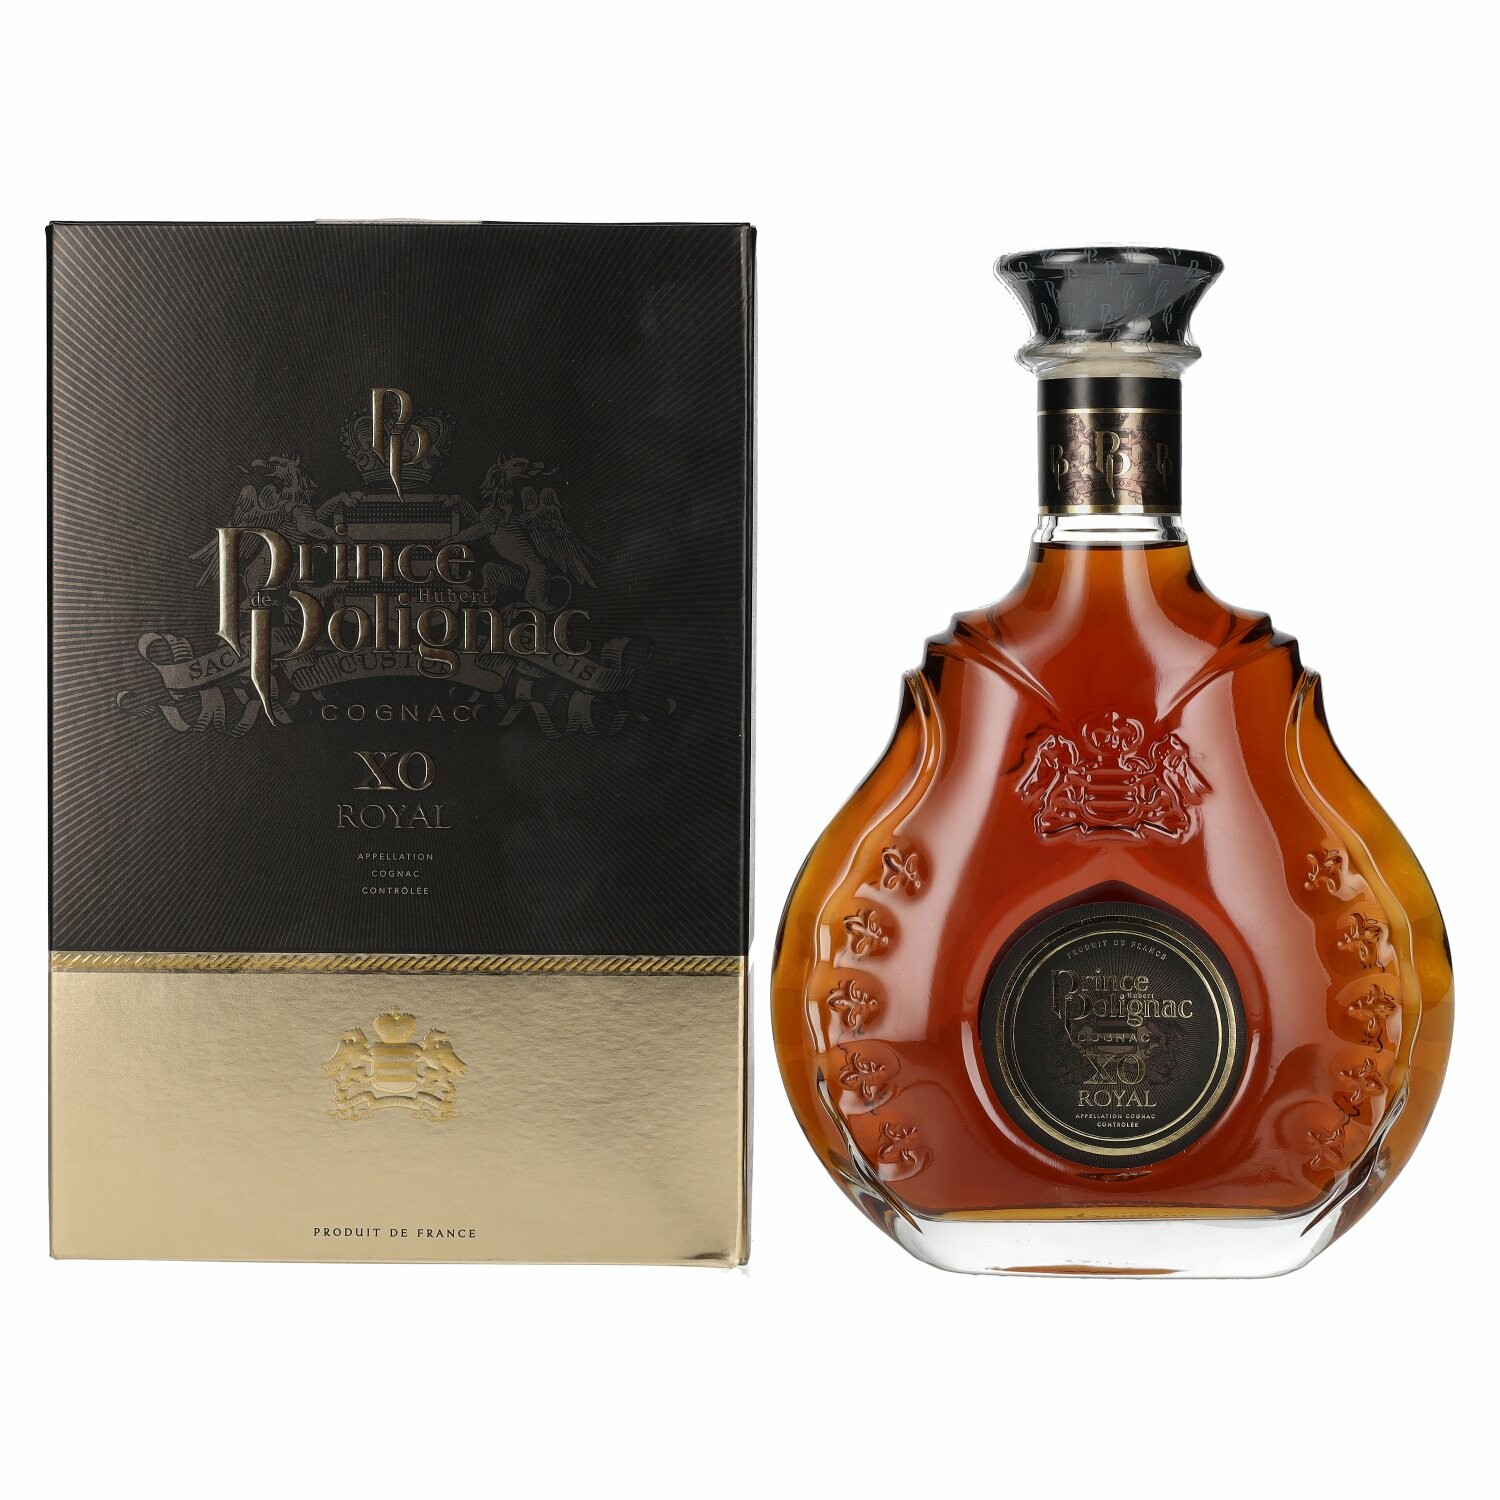 Prince Hubert de Polignac X.O Cognac Royal 40% Vol. 0,7l in Giftbox